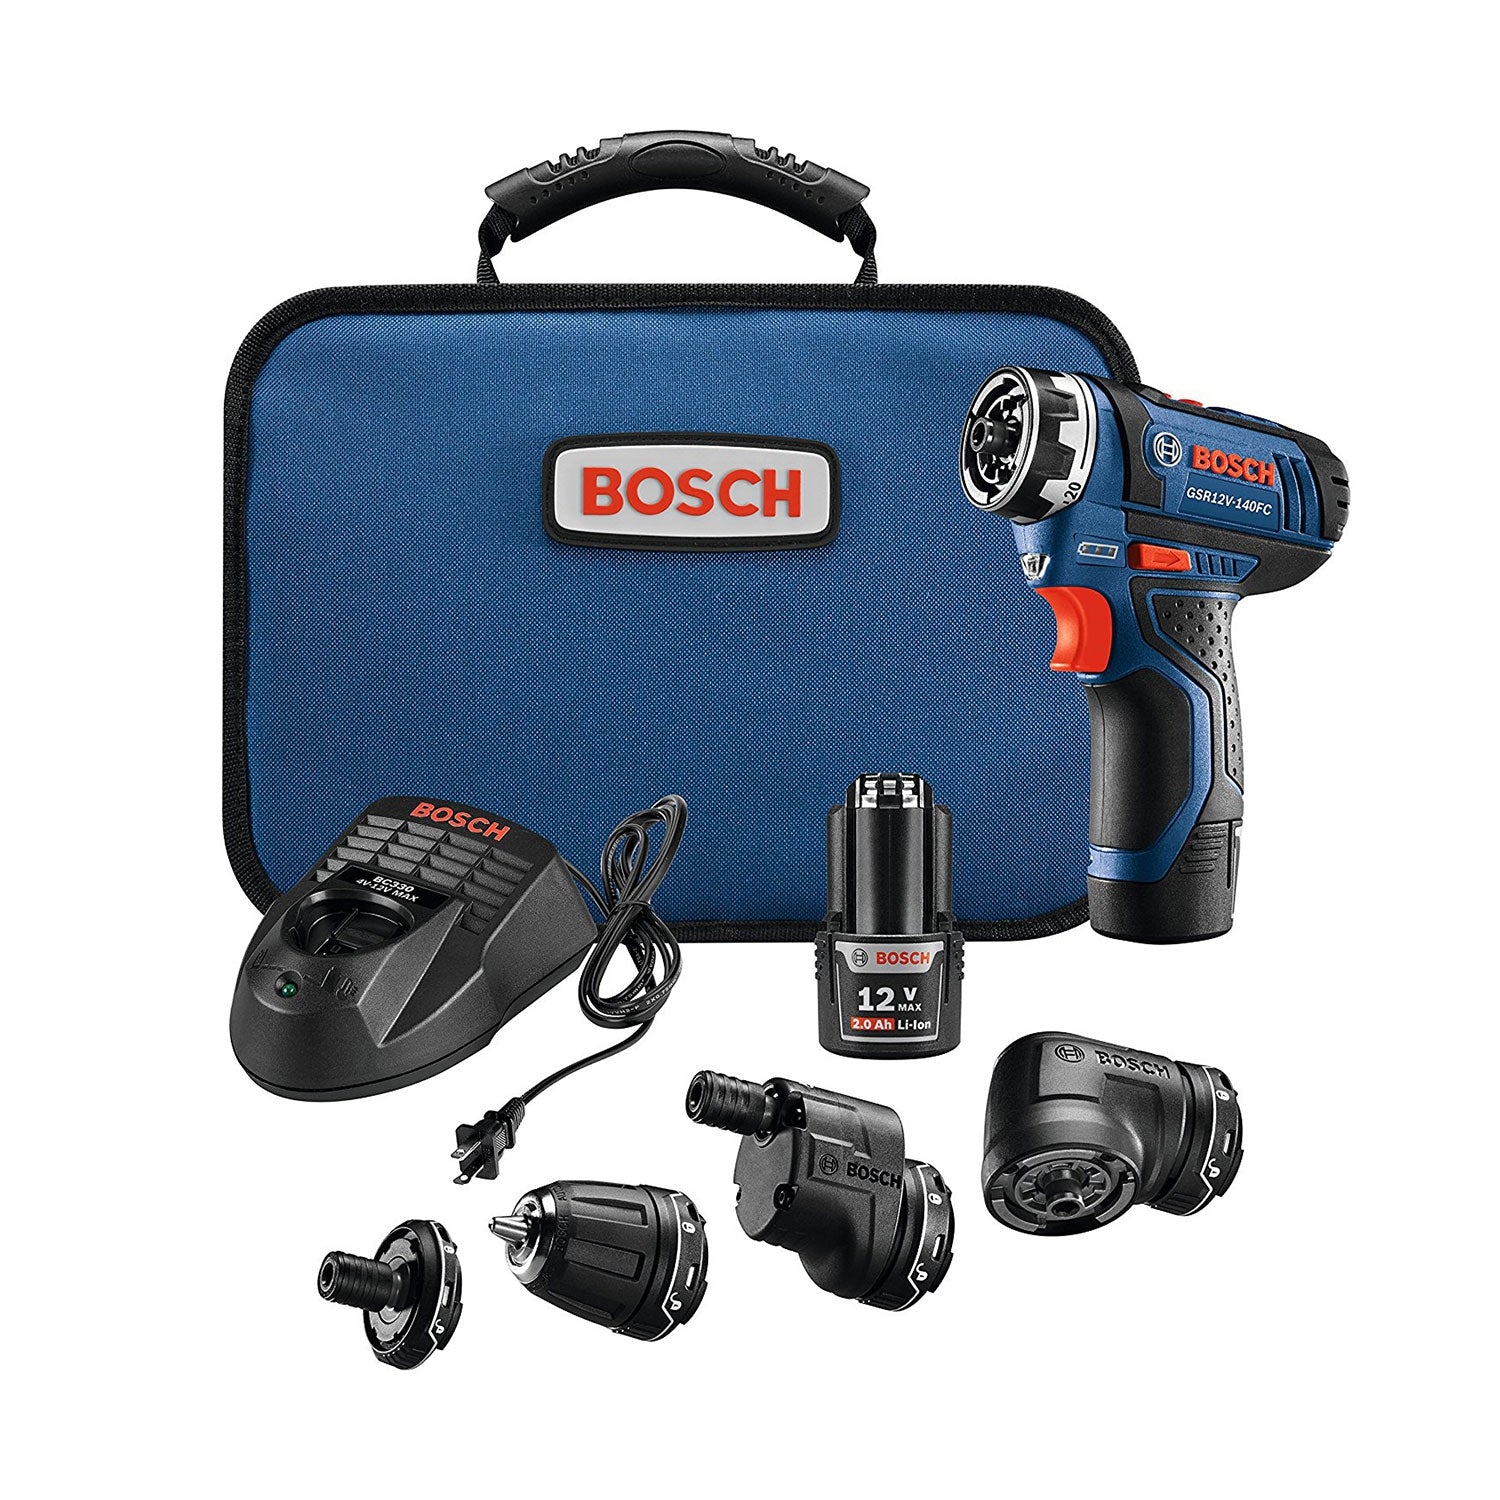 Bosch GSR12V-140FCB22 12V Max FlexiClick 5-in-1 Drill Driver Kit